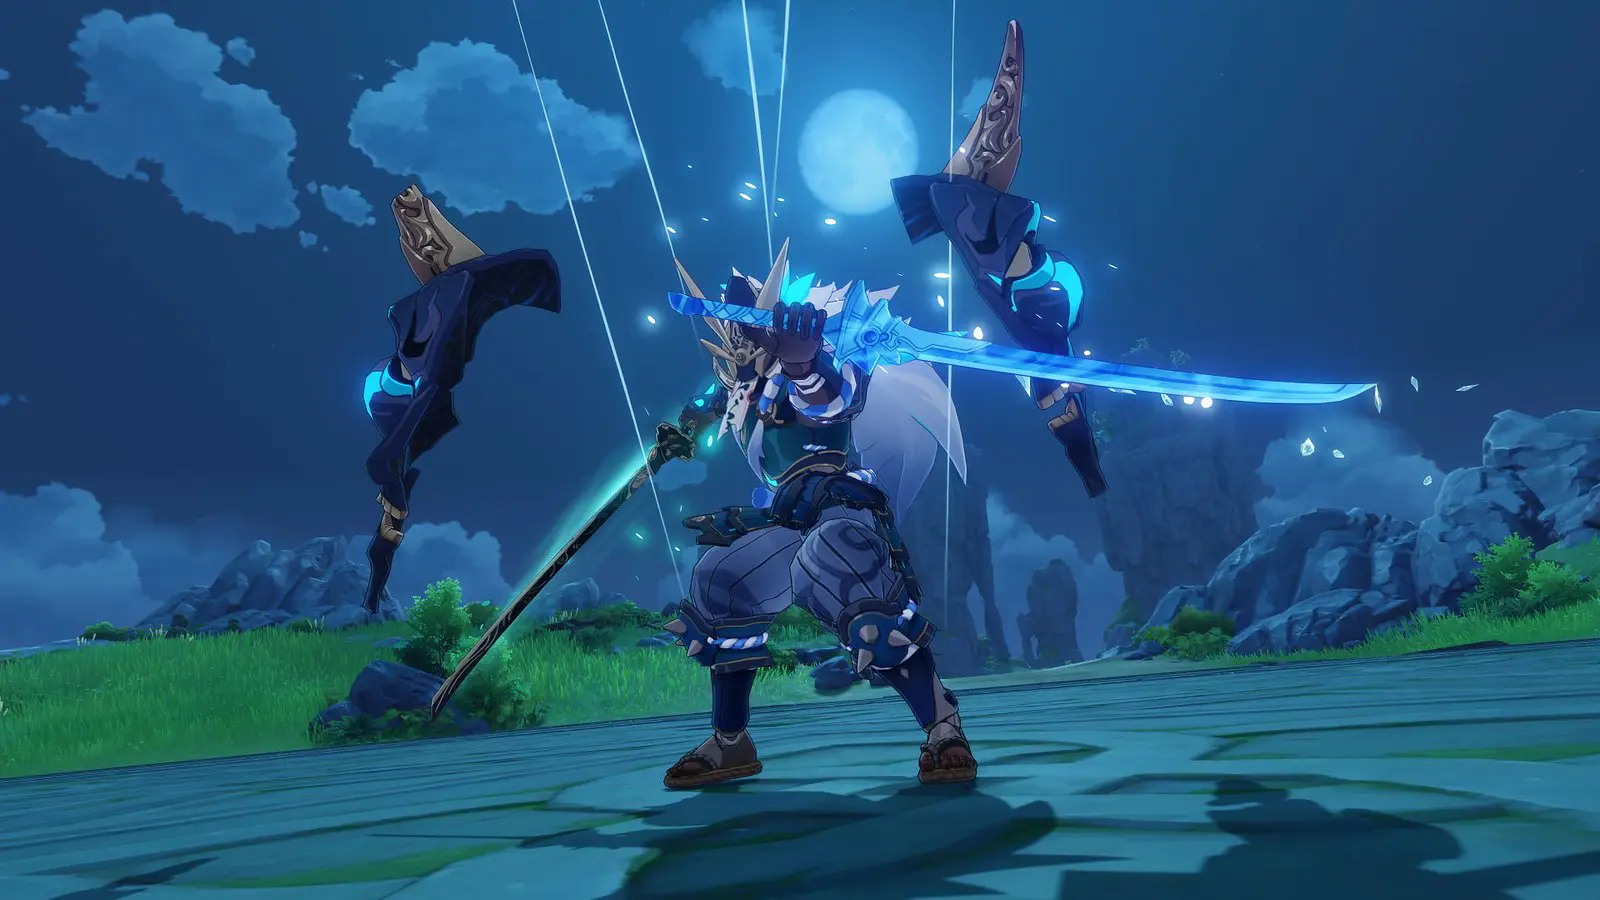 Imagem do update 1.6 de Genshin Impact com um novo inimigo empunhando duas espadas